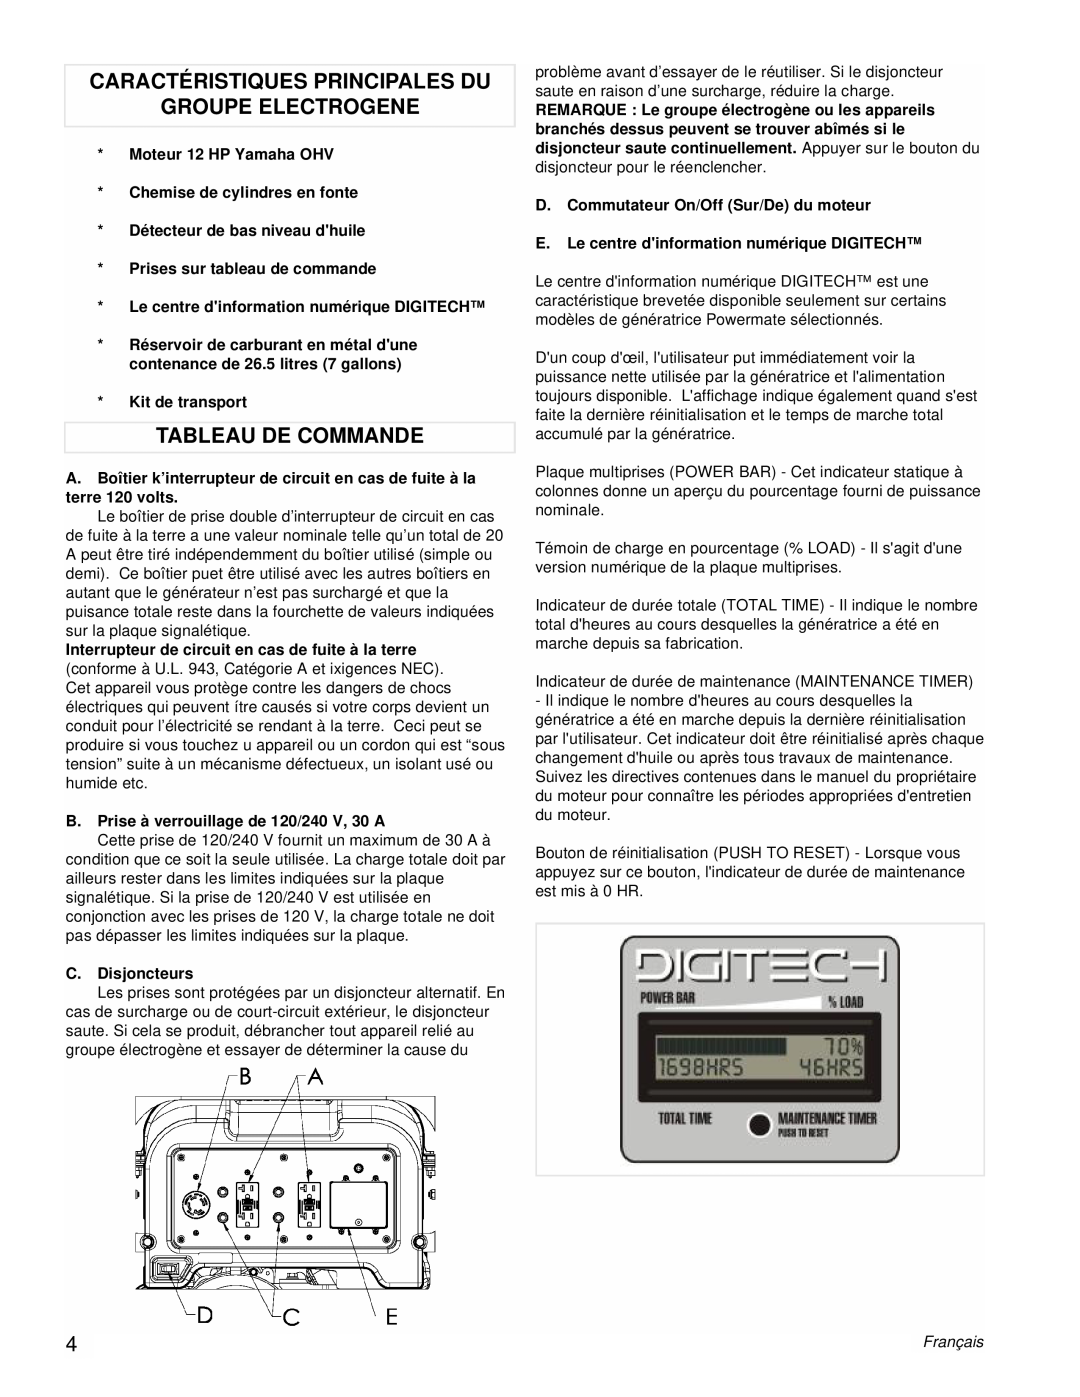 Powermate PM0606750 manual Caractéristiques Principales Du, Groupe Electrogene, Tableau De Commande, Français 